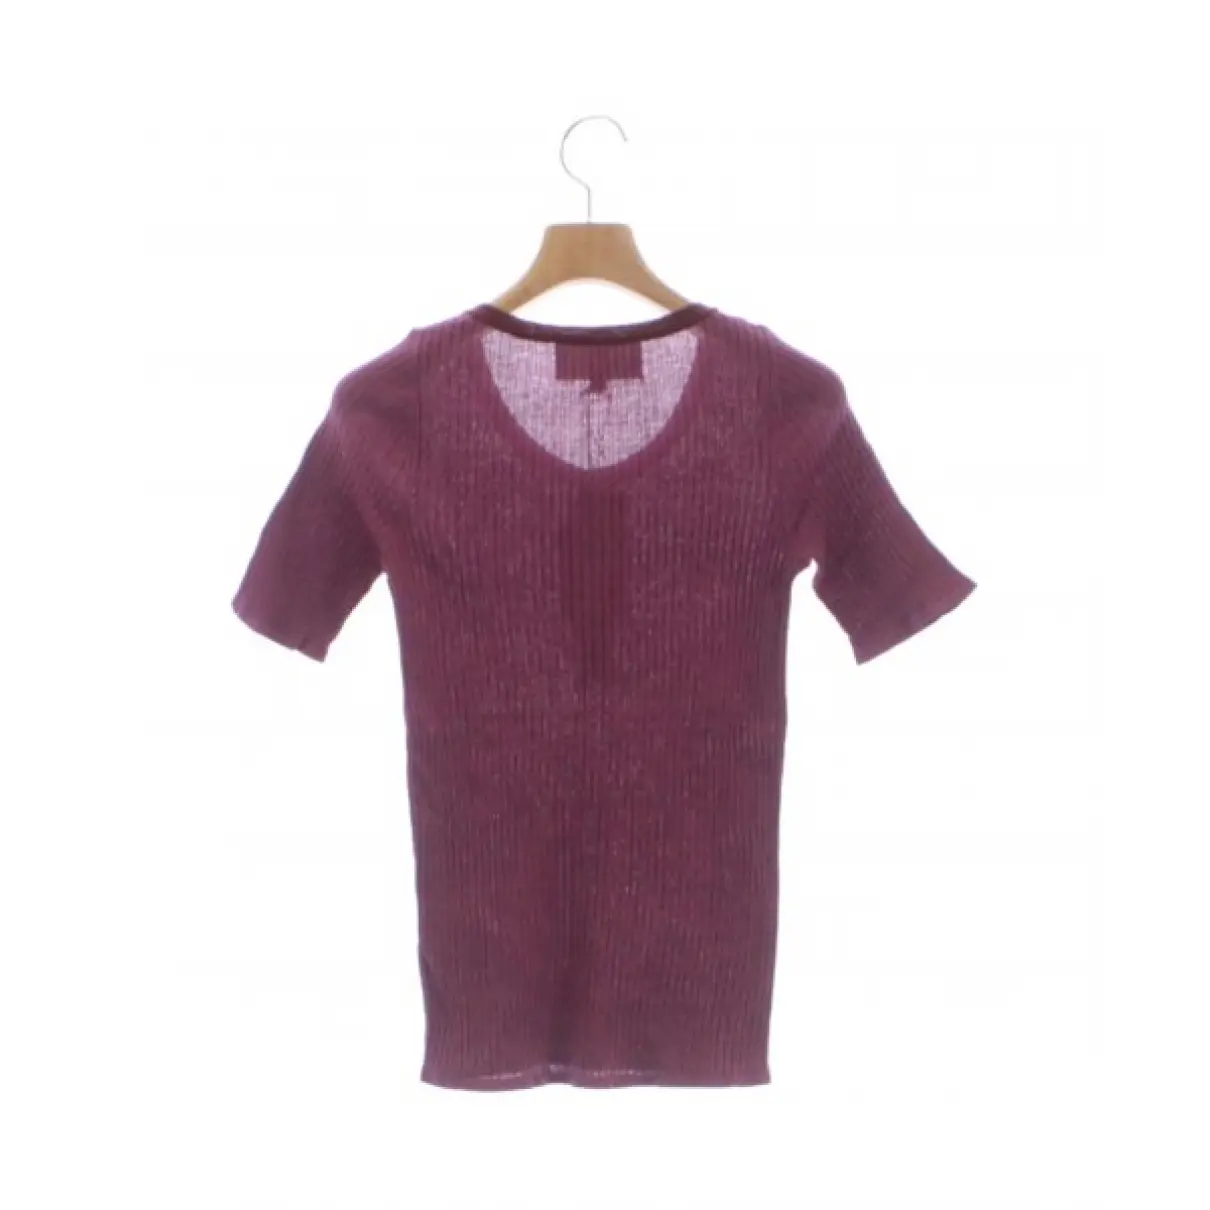 Buy Demylee Knitwear online